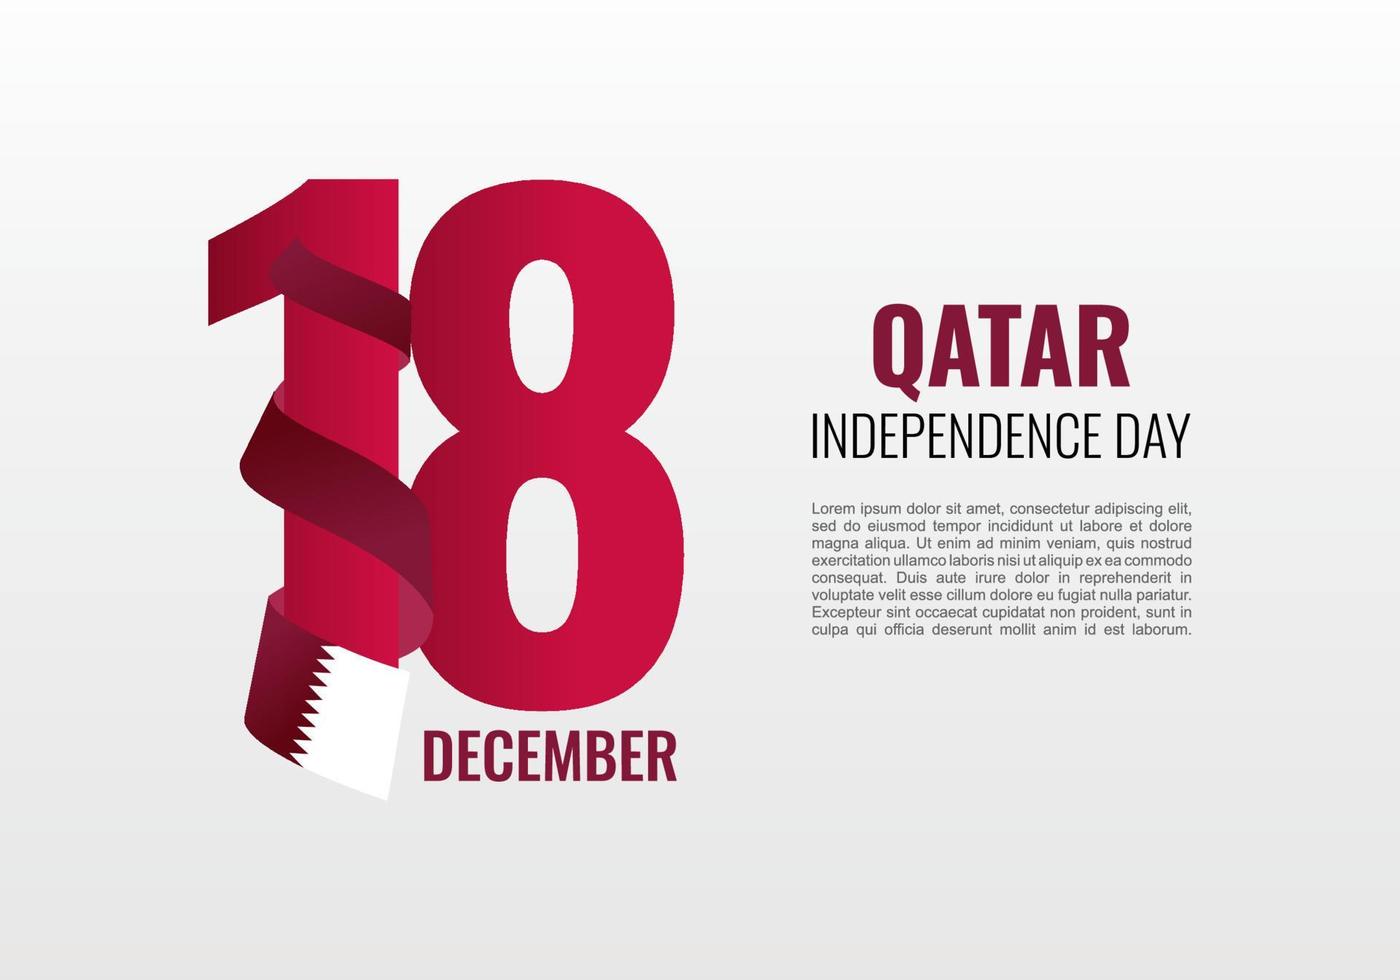 cartaz de banner de fundo do dia da independência do qatar para celebração em 18 de novembro. vetor